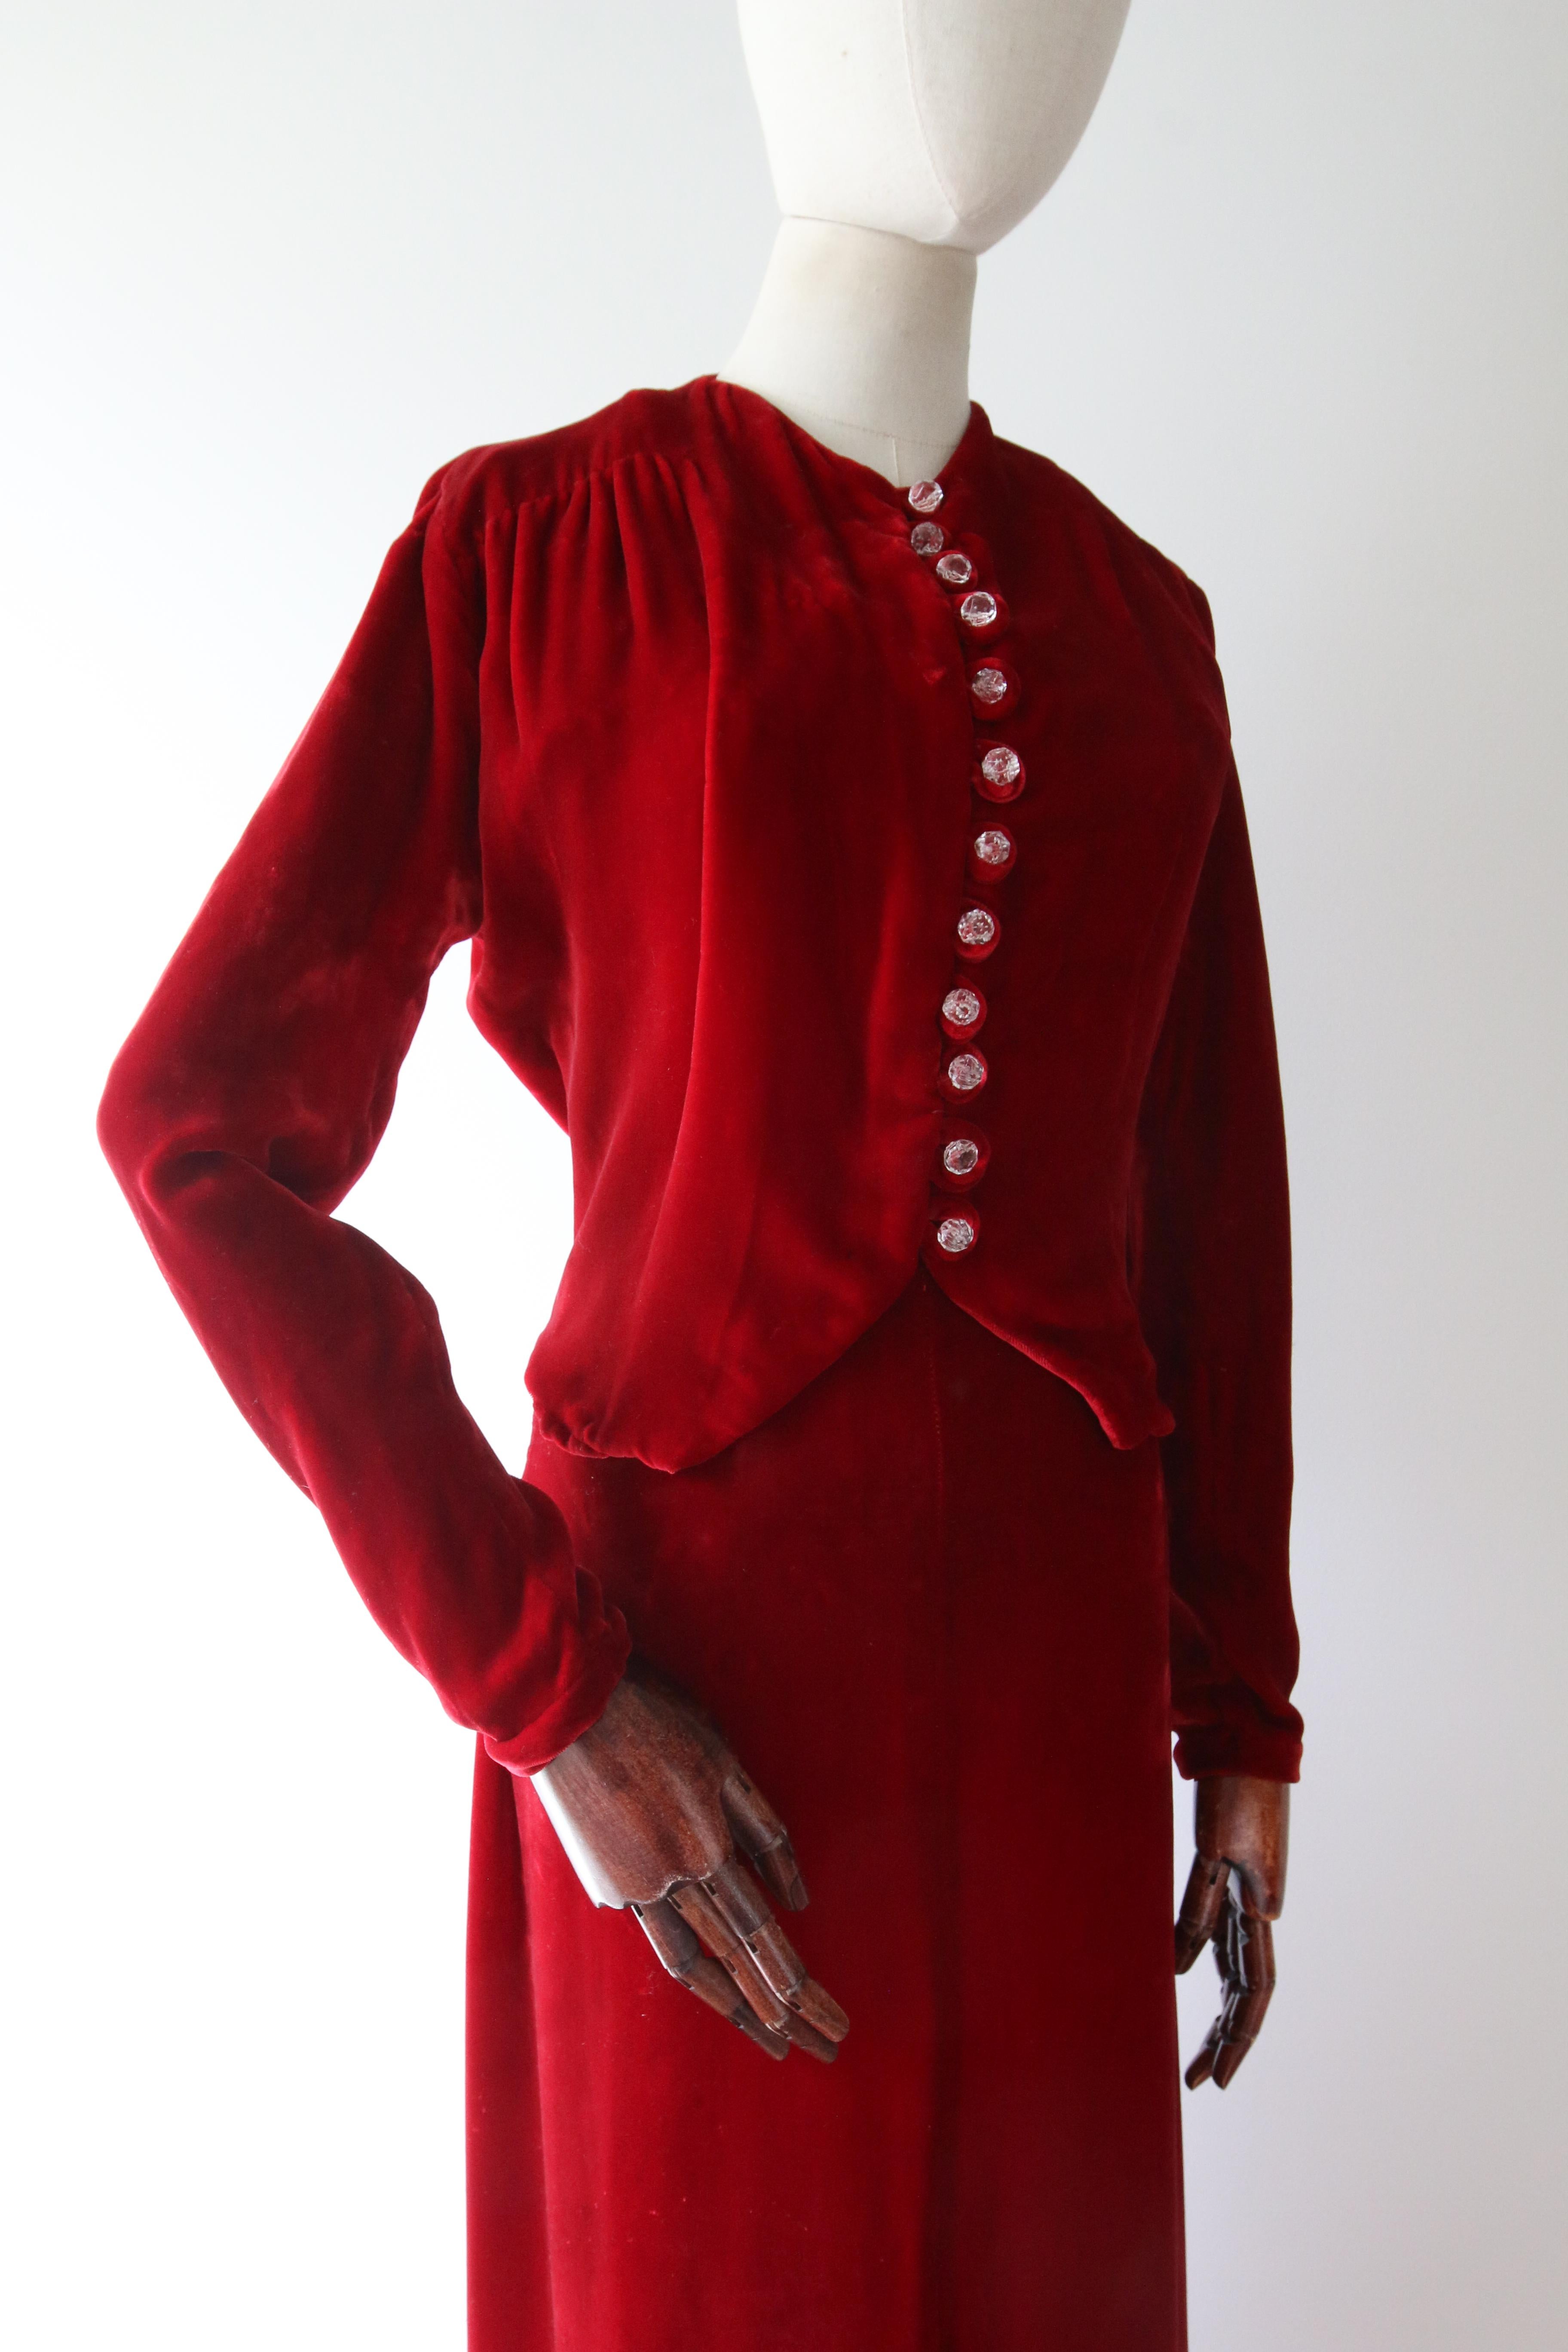 Vintage 1930's red velvet dress and jacket 1930's bias cut UK 6- 8 US 2-4 For Sale 9